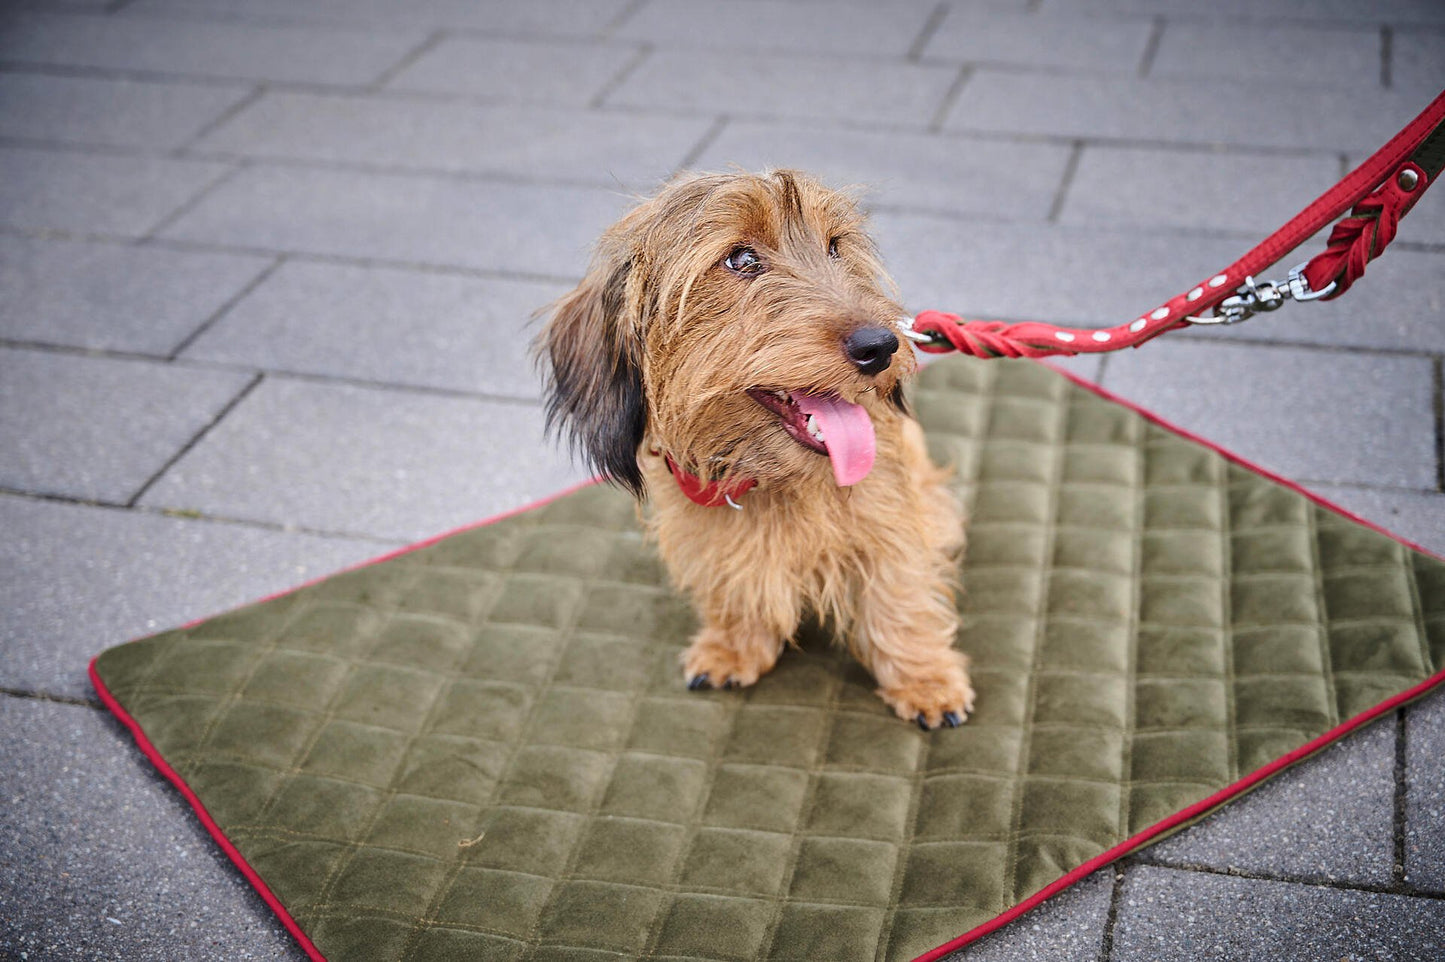 LABONI Leine EDELWEISS für den Hund - Raffinierte Hundeleine aus robustem Fettleder mit handgeflochtenen Details - Askmy4Cats